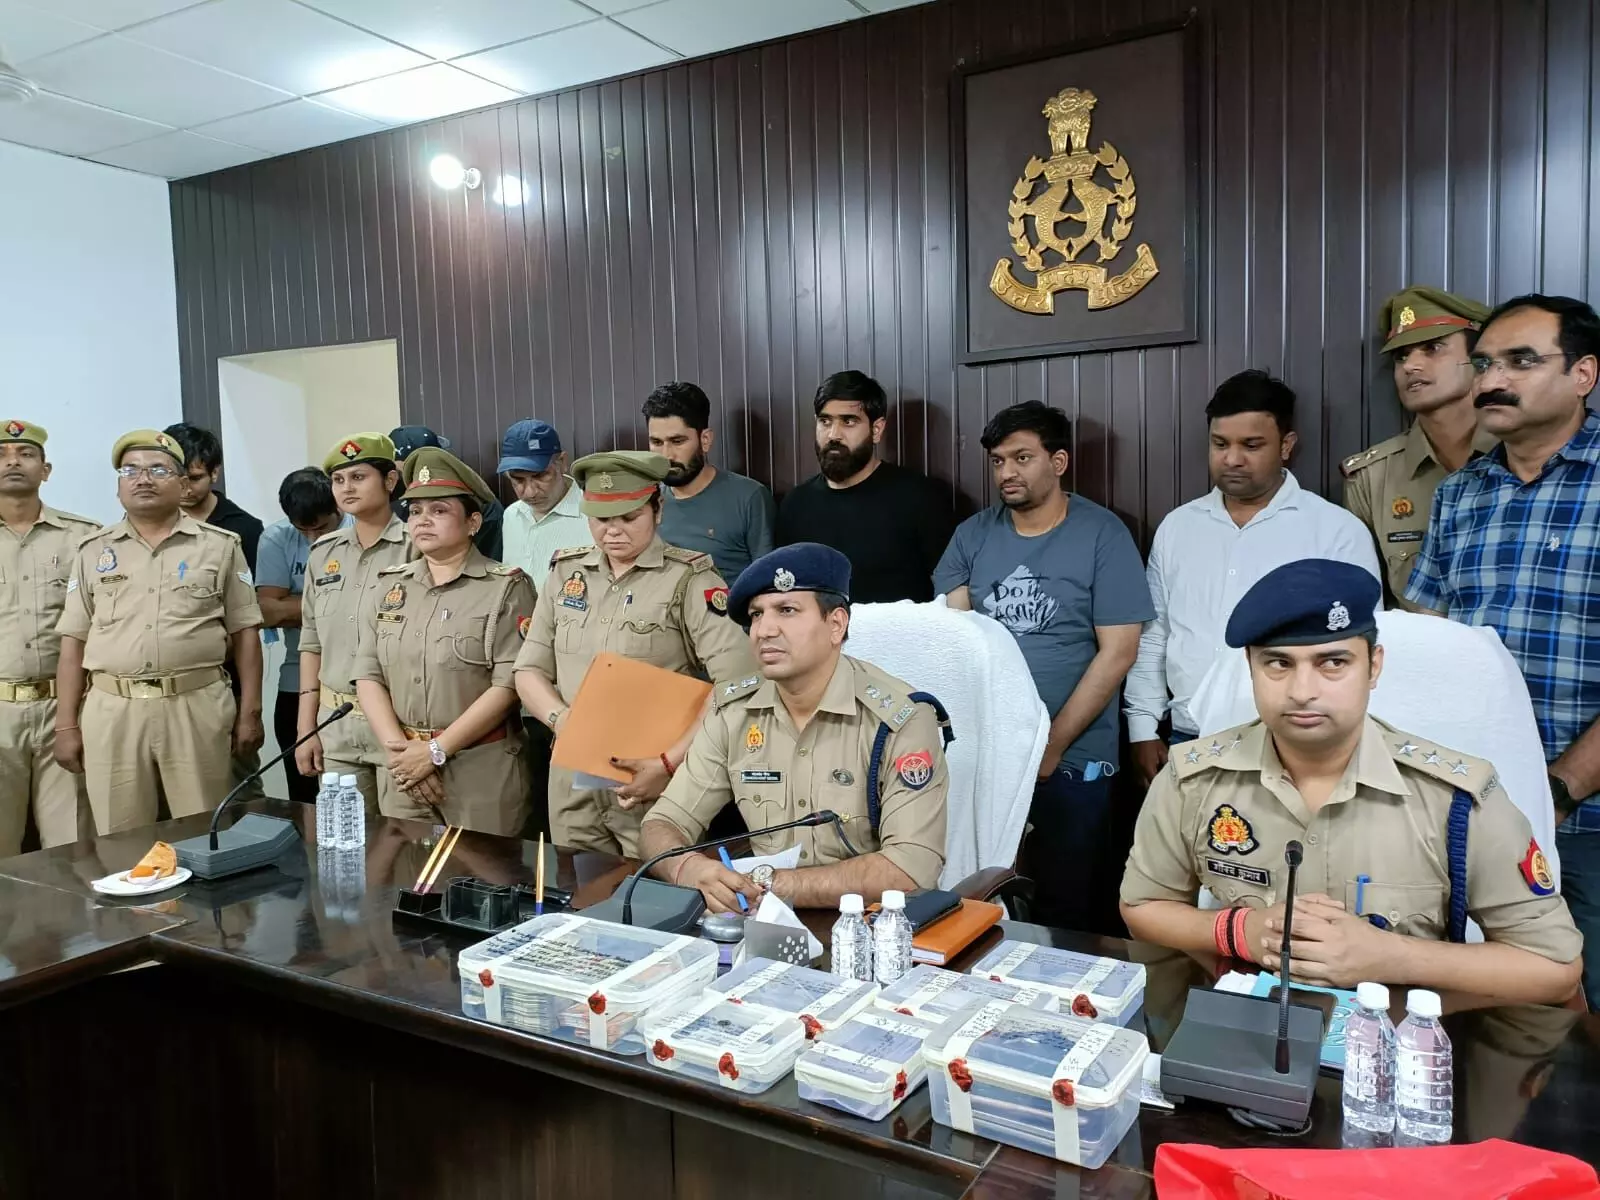 रिटायर्ड शिक्षिका से 3.55 करोड़ रुपए का फ्रॉड करने वाले आठ आरोपी सरगना संग गिरफ्तार, पुलिस अधिकारी बनकर बिछाते थे जाल